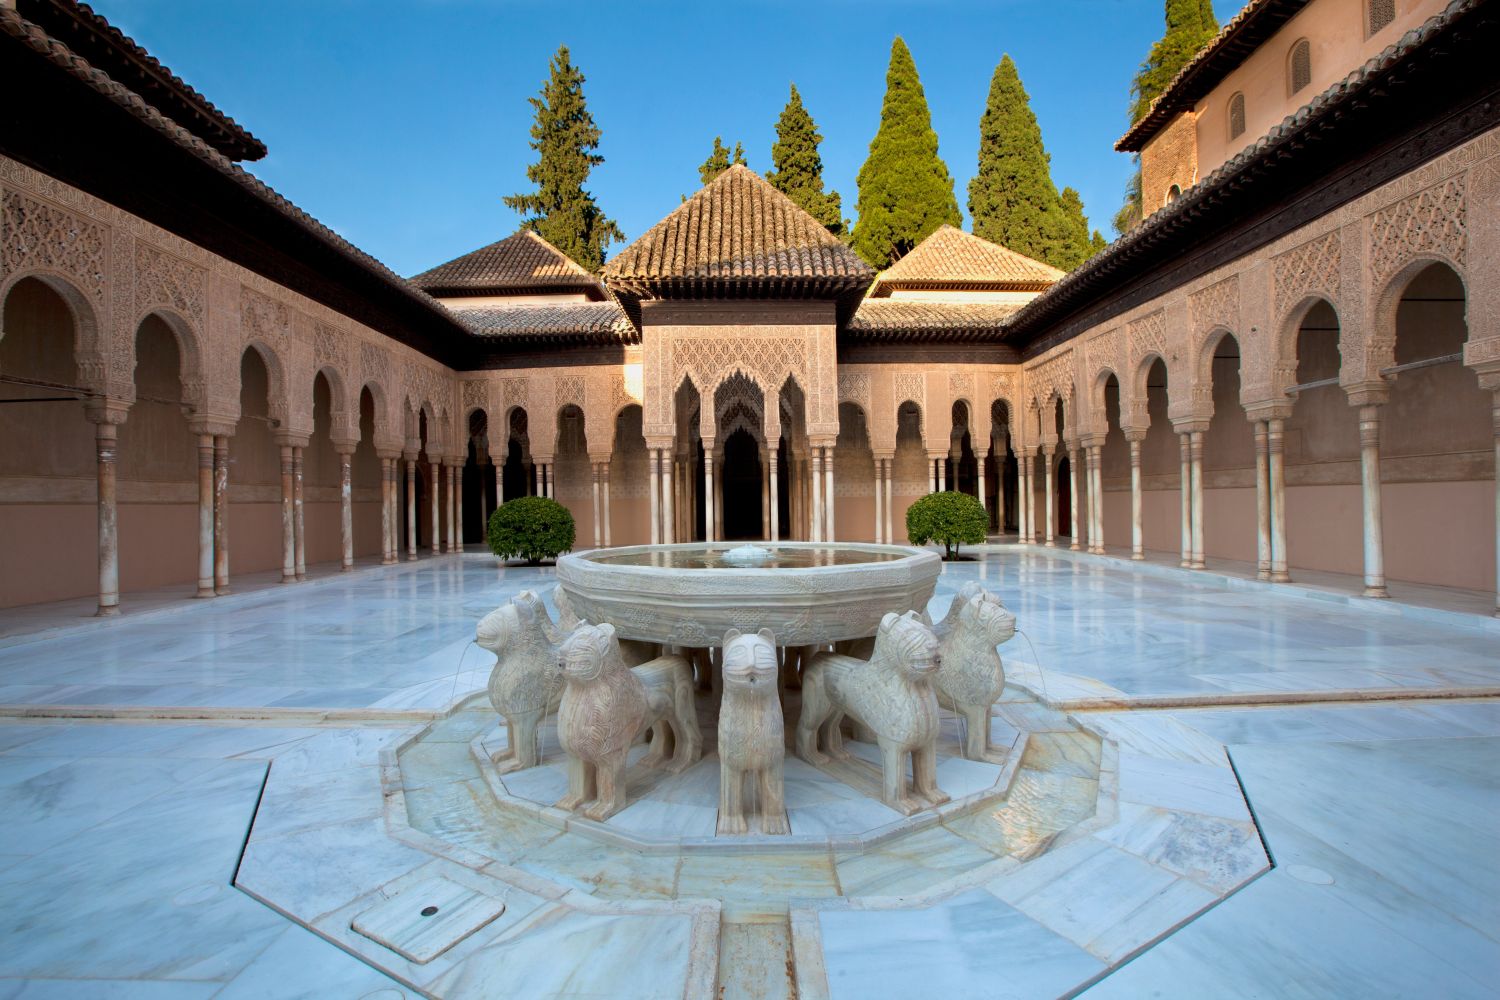 Poesía y arquitectura en la Alhambra. Los poemas del Palacio de los Leones (El jardín feliz)